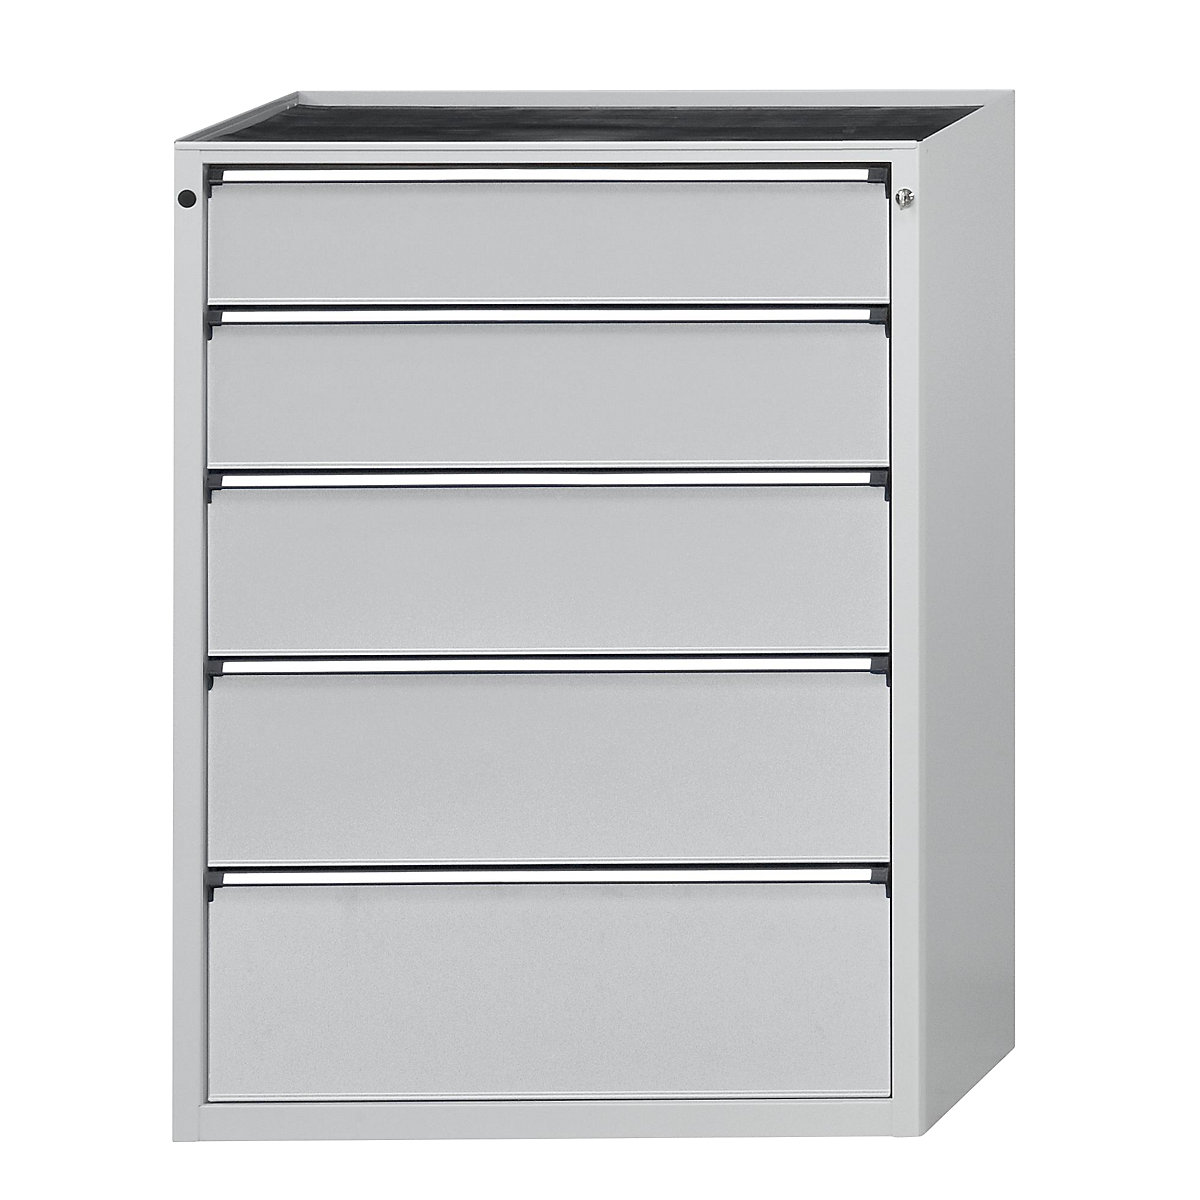 ANKE – Armoire à tiroirs, l x p 910 x 675 mm, 5 tiroirs, hauteur 1280 mm, façade gris clair